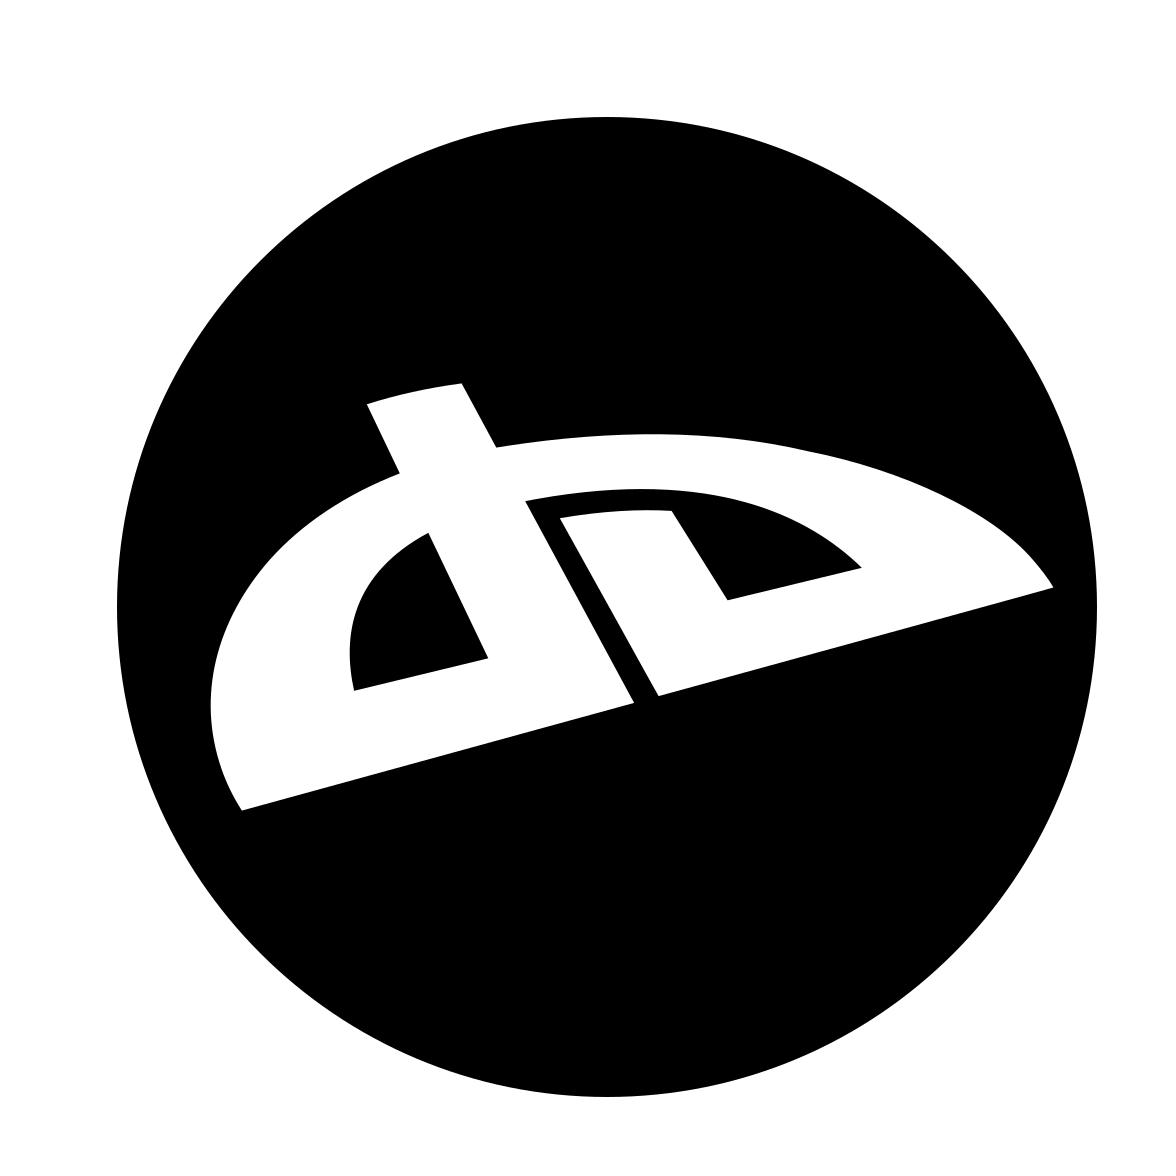 Deviantart Logo PNG Image in High Definition pngteam.com